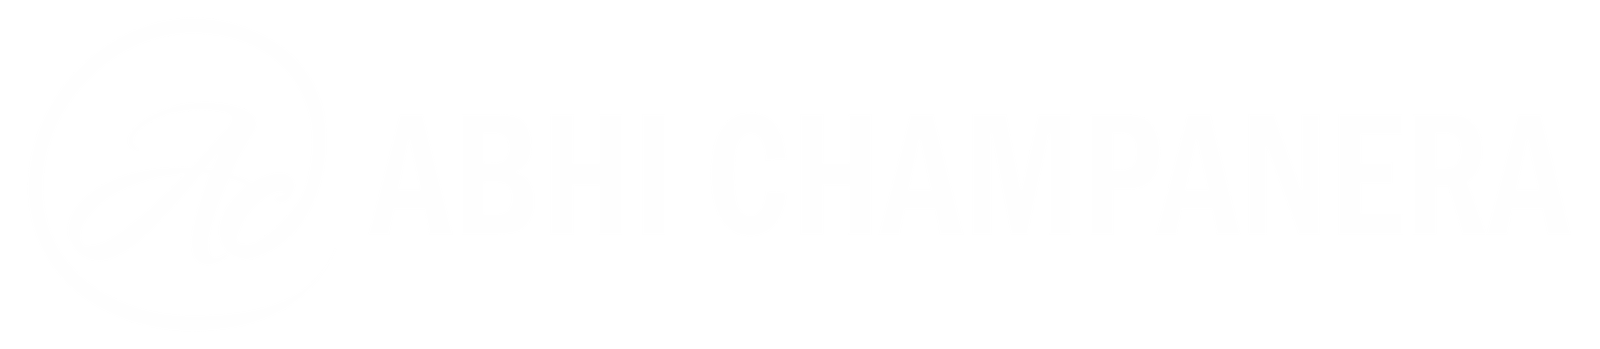 Abhi Champanera Logo